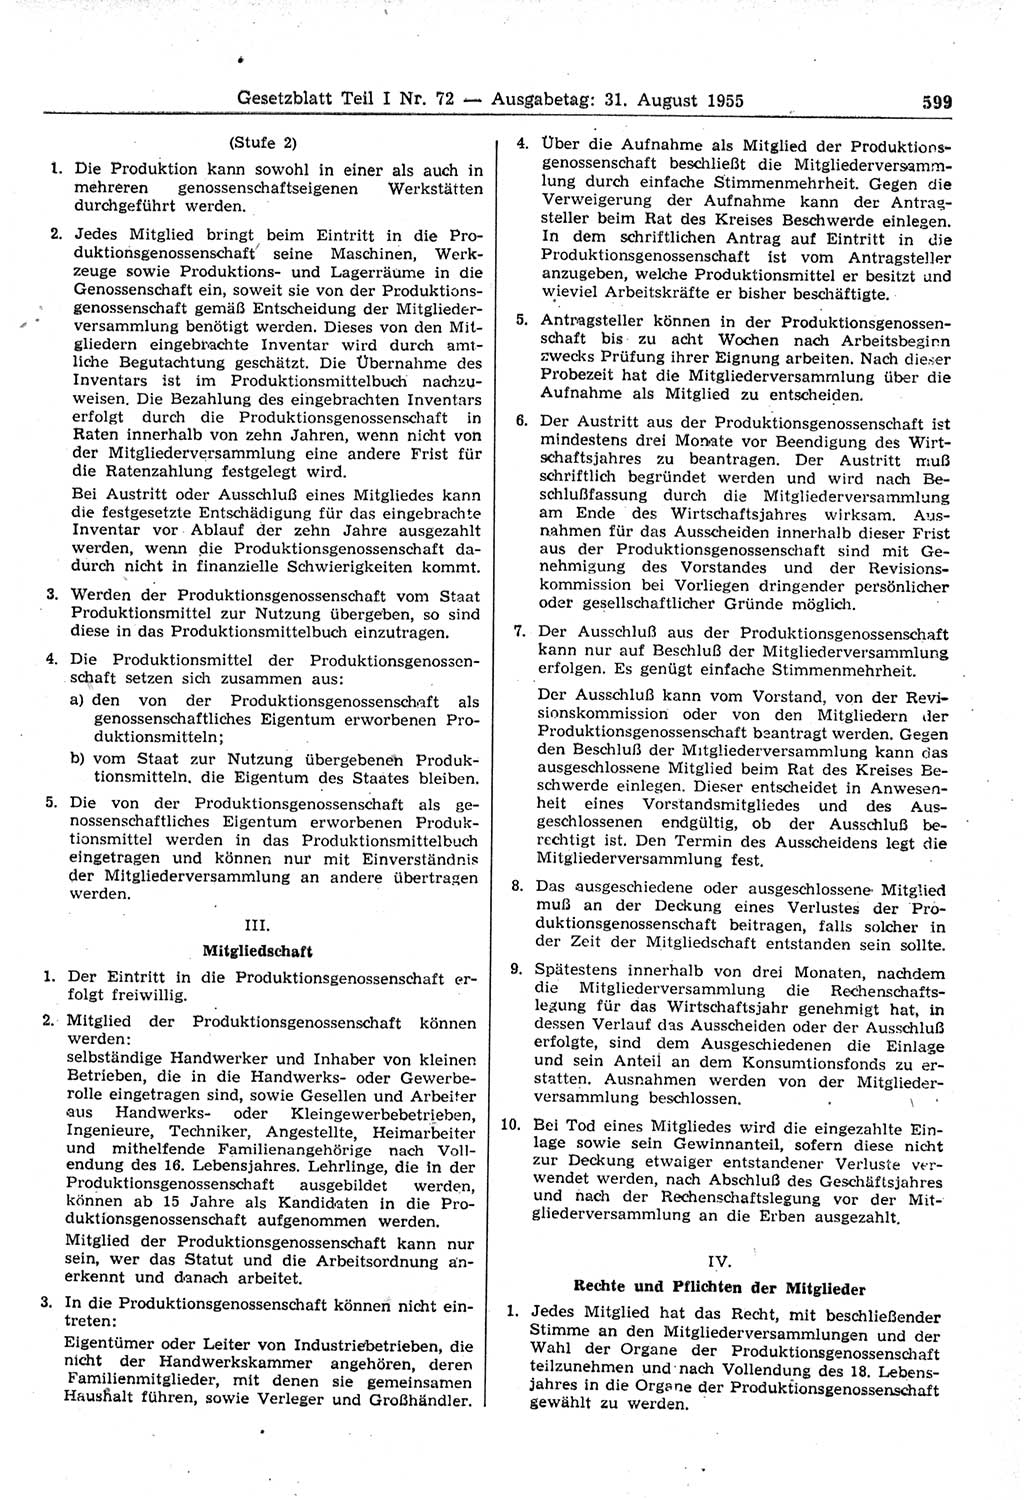 Gesetzblatt (GBl.) der Deutschen Demokratischen Republik (DDR) Teil Ⅰ 1955, Seite 599 (GBl. DDR Ⅰ 1955, S. 599)